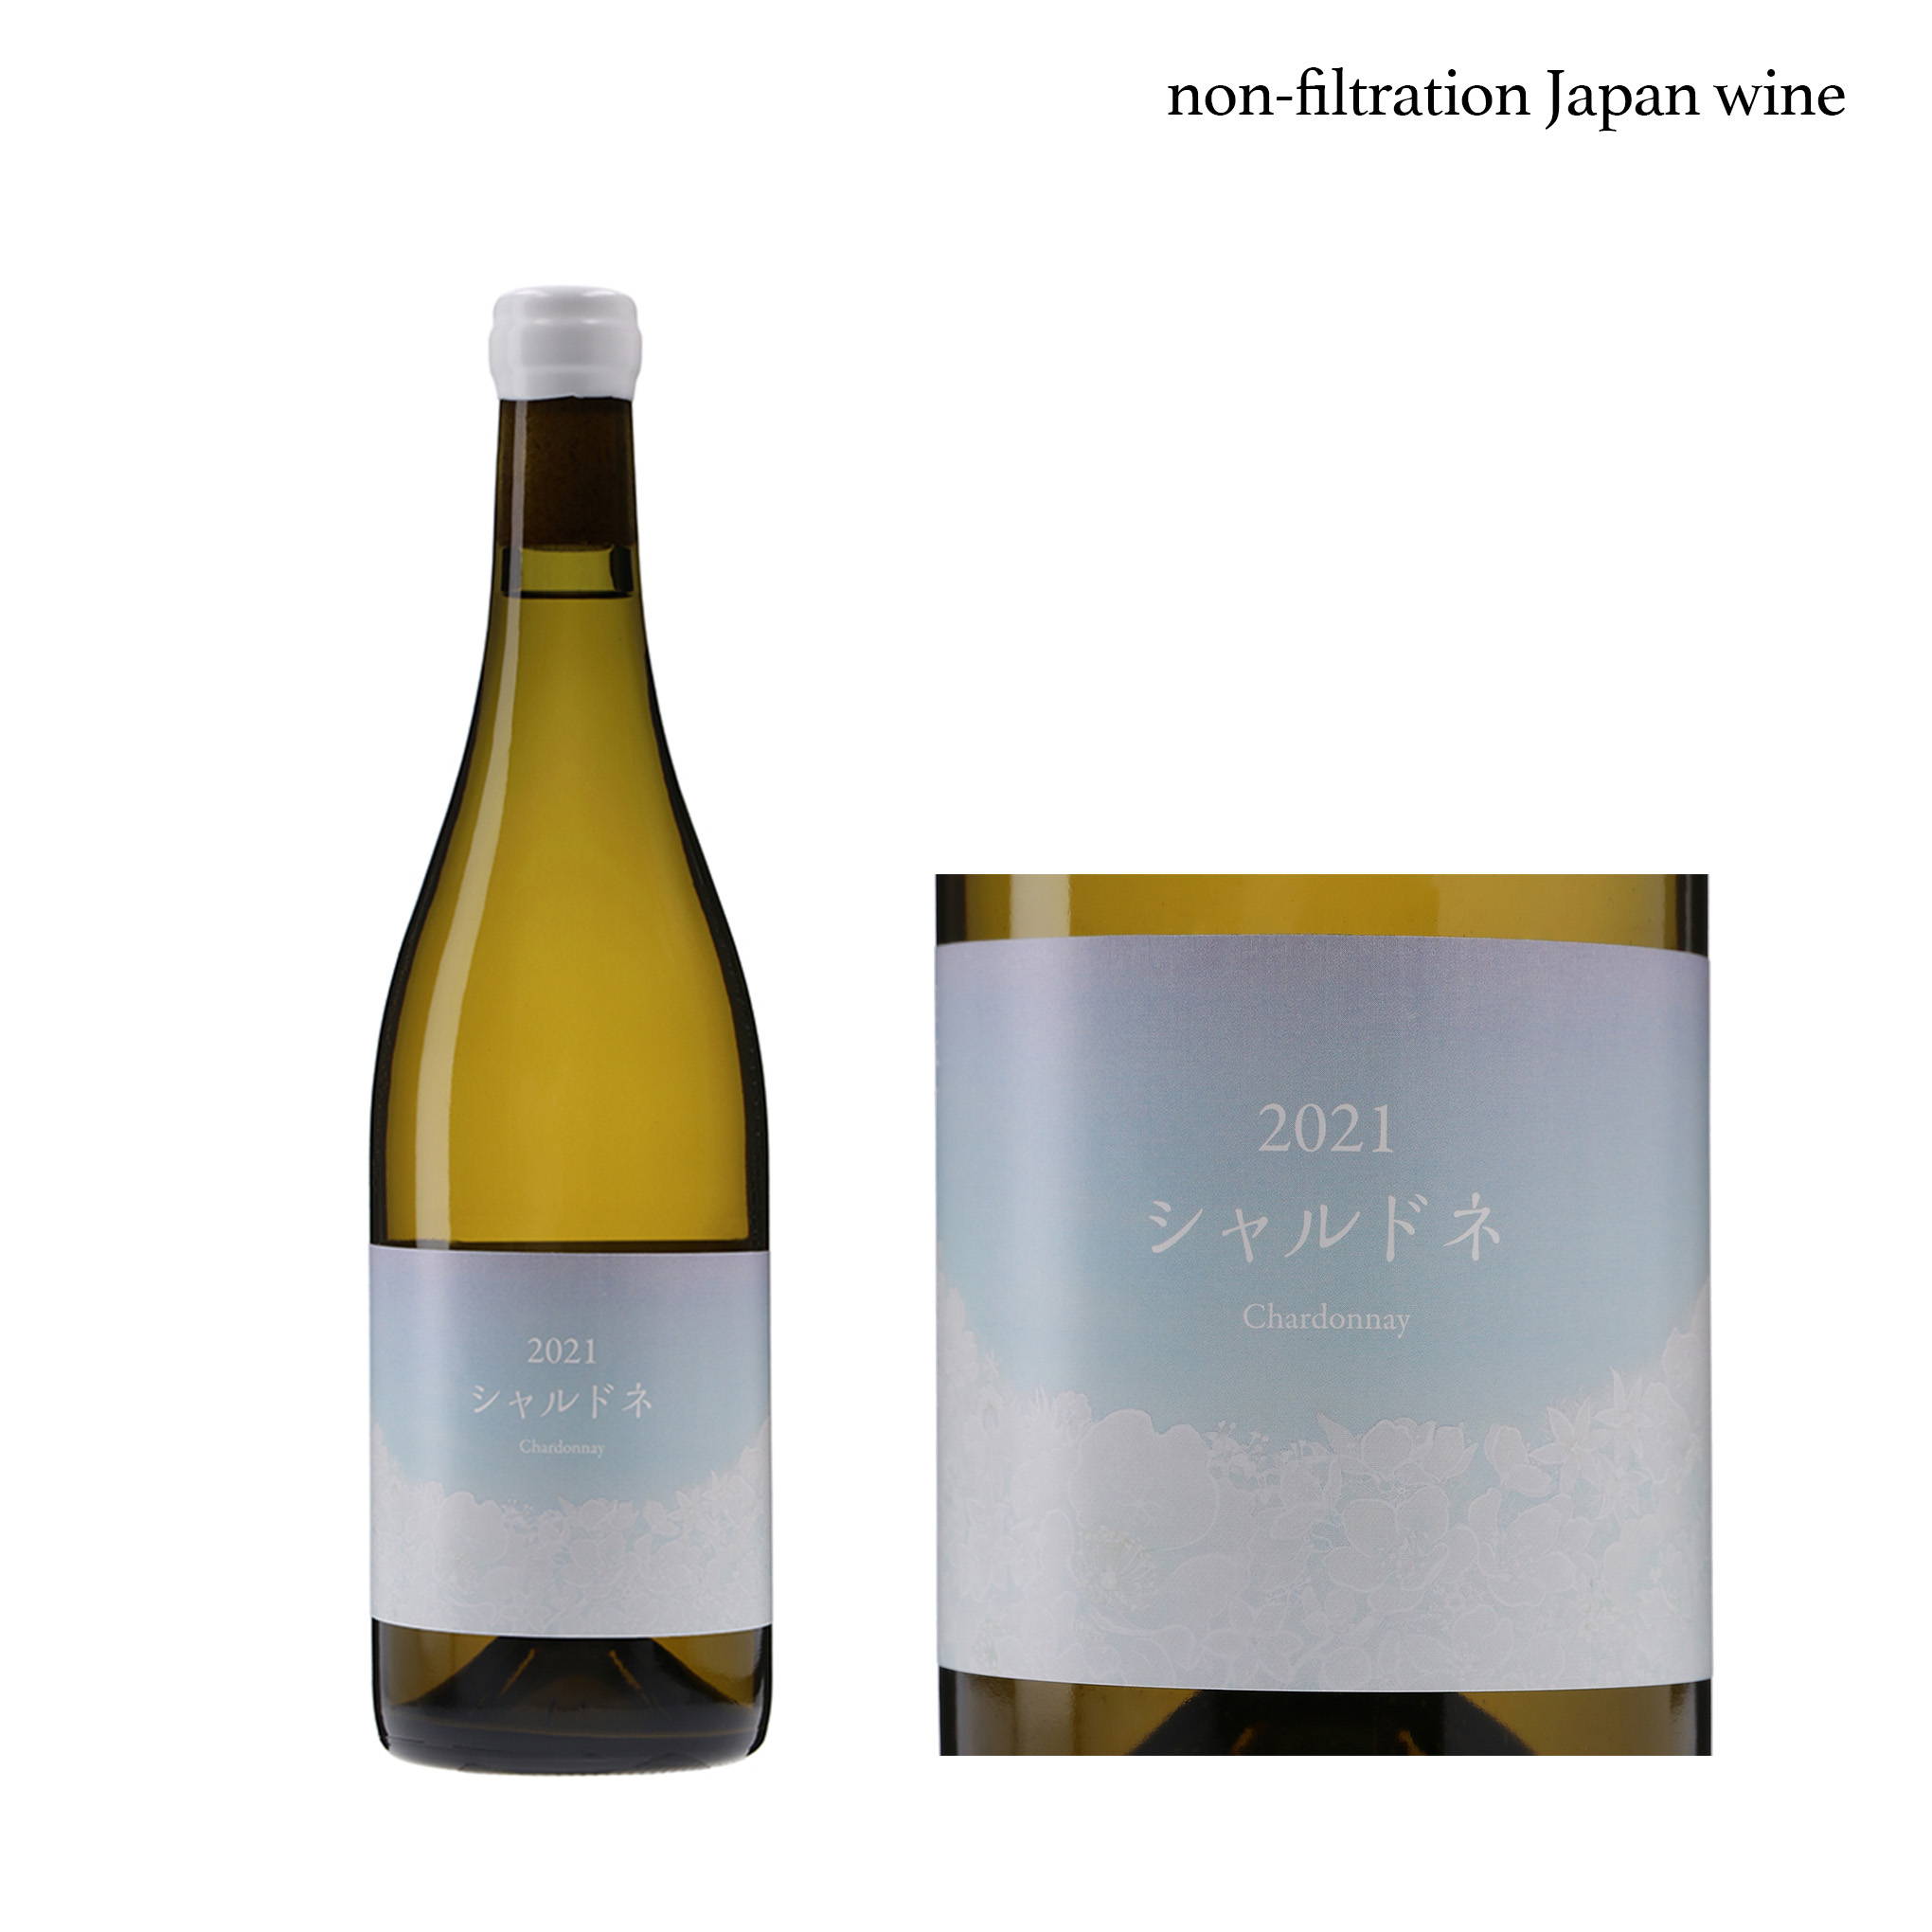 「こことあるシリーズ」の新銘柄！日本ワインのキーパーソン、ブルース氏が手がける、『ココ・ファーム・ワイナリー』の白ワイン『2021 シャルドネ 』。